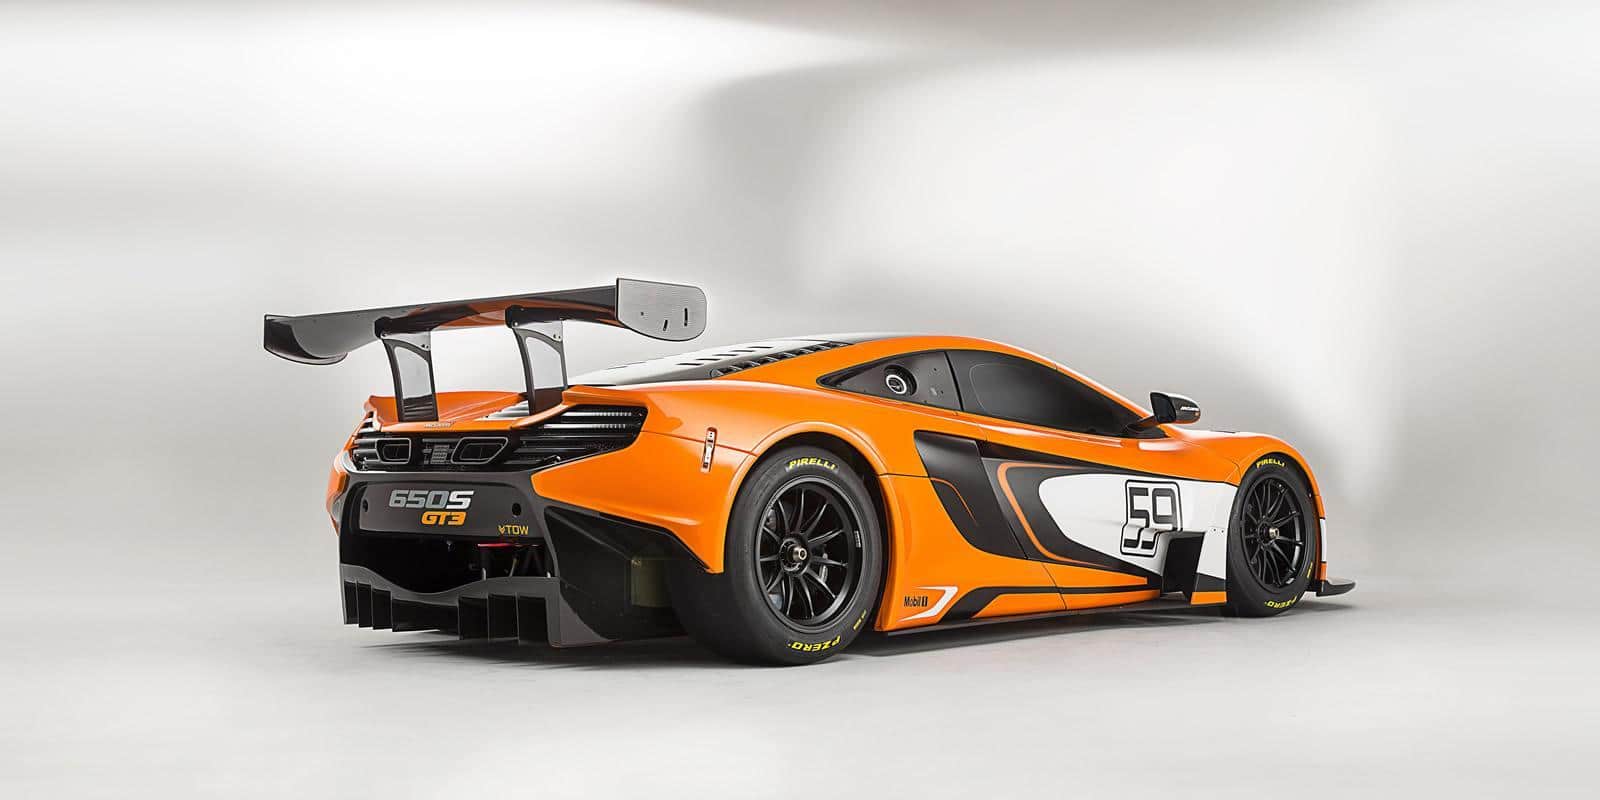 650S-GT3-McLaren 11